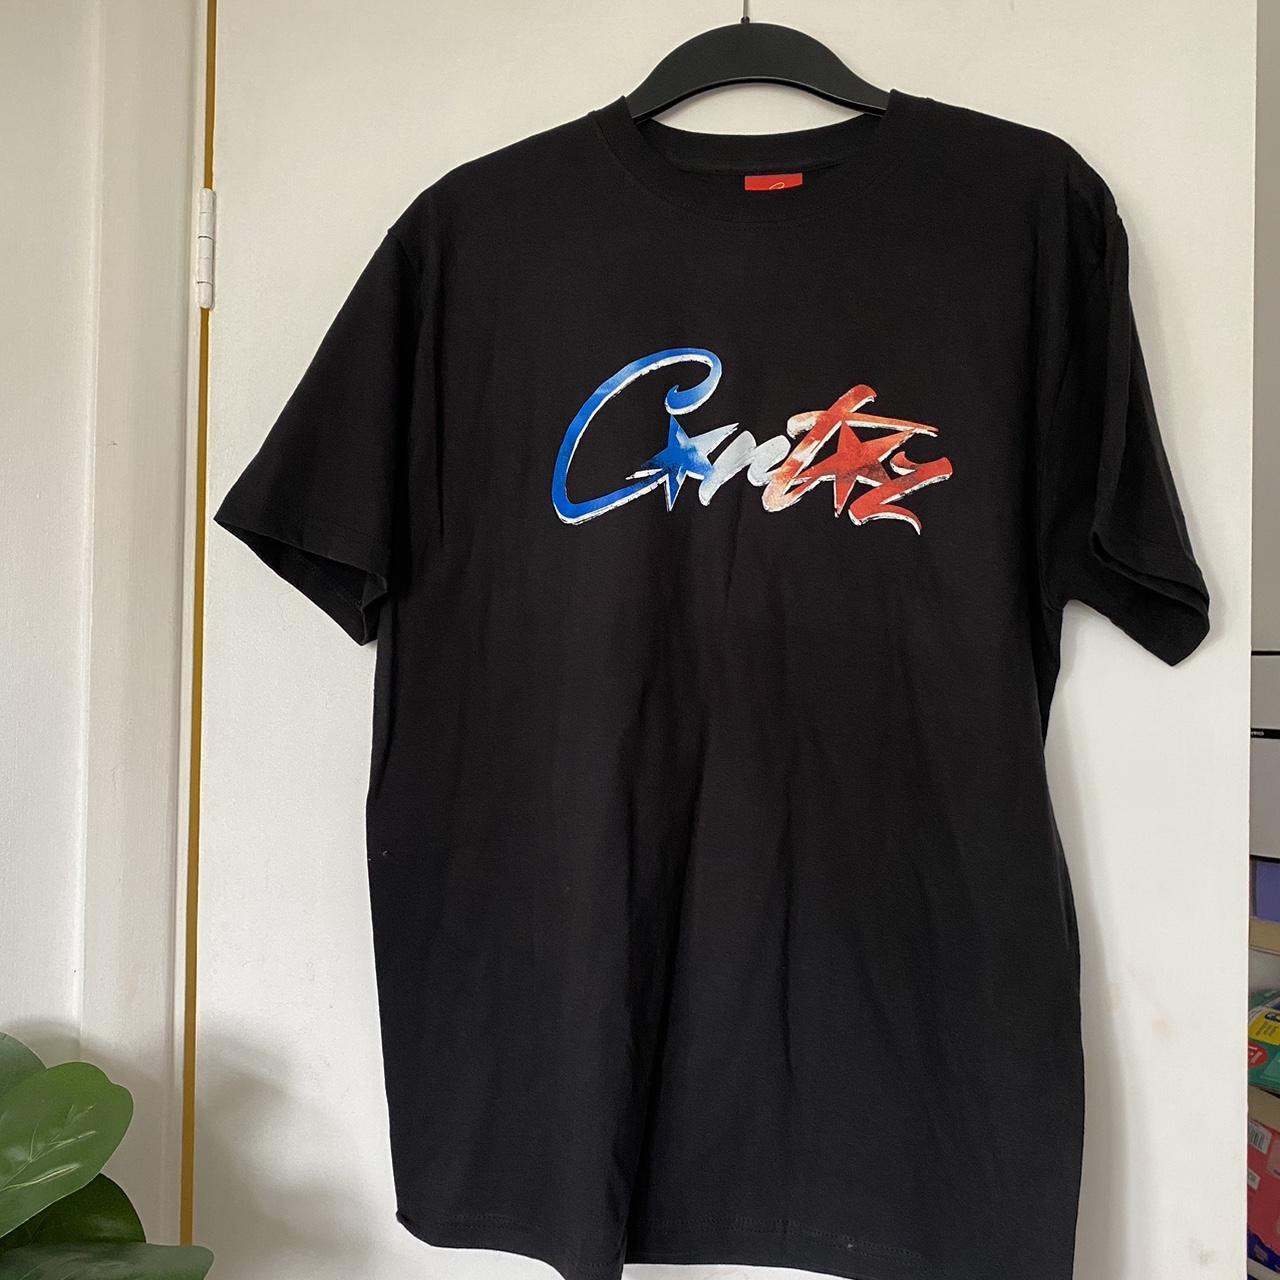 CRTZ Corteiz black T-shirt red white blue logo Size... - Depop